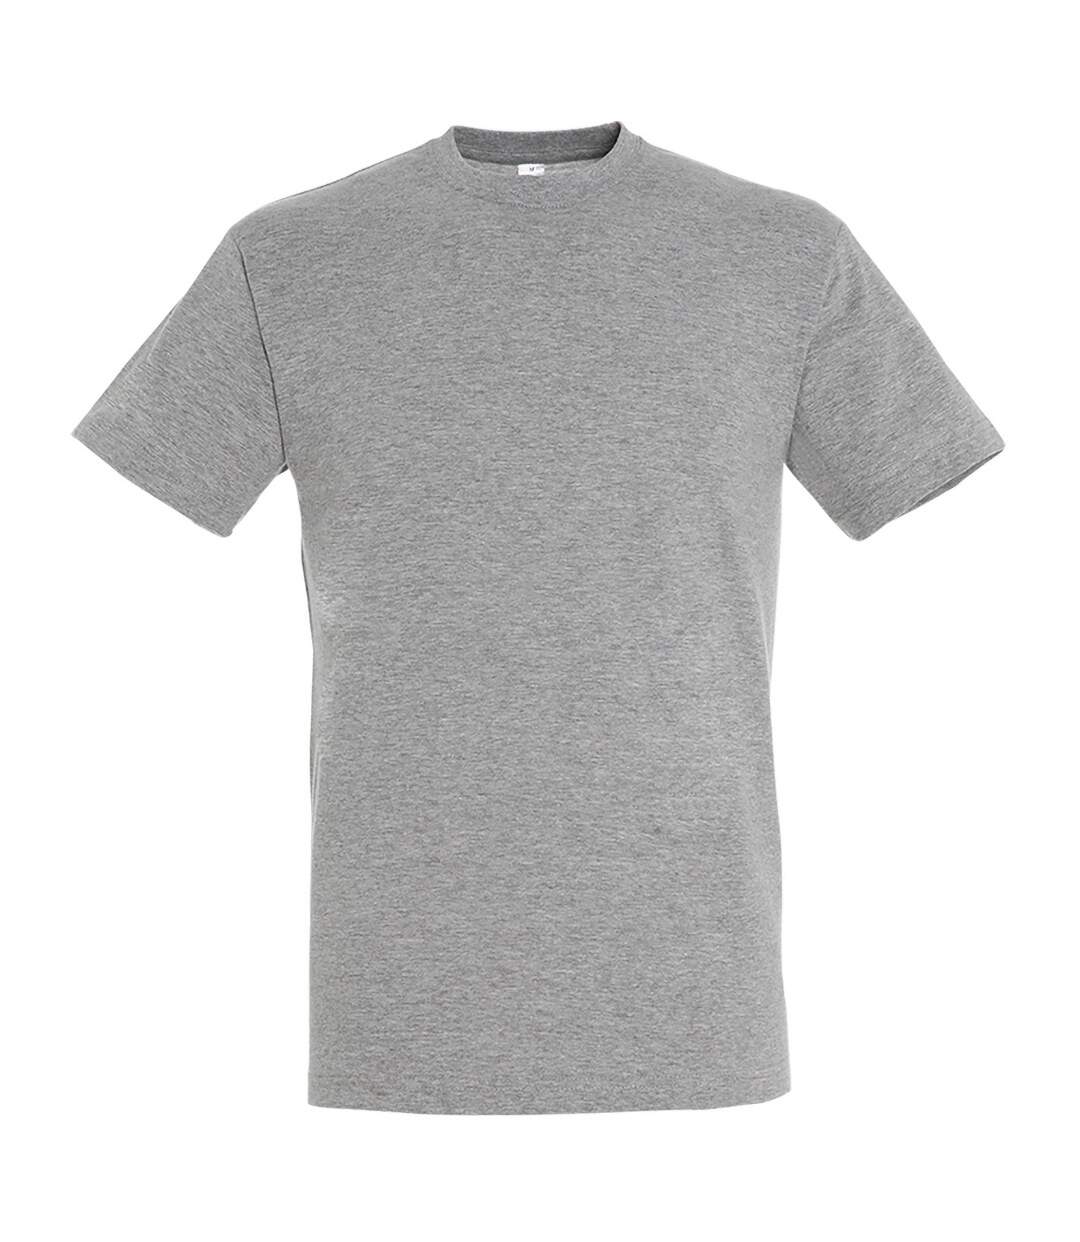 SOLS - T-shirt REGENT - Homme (Gris chiné) - UTPC288